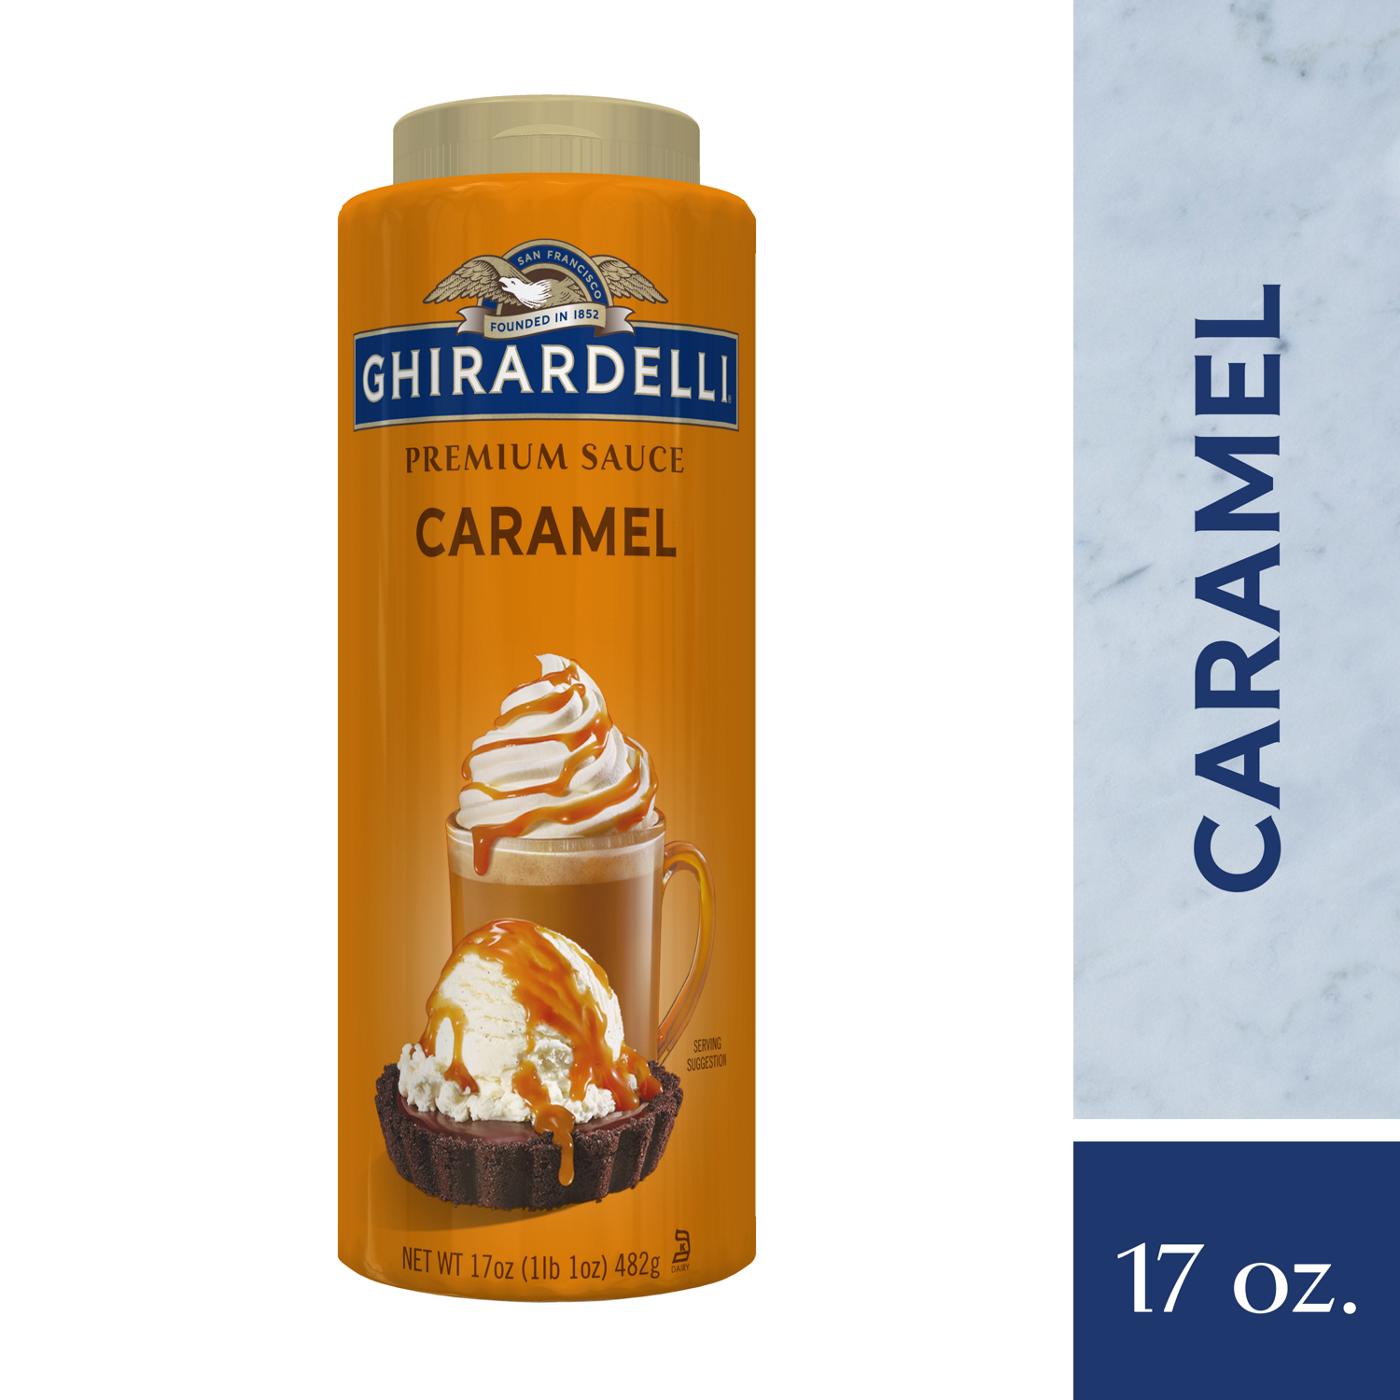 Ghirardelli Premium Caramel Sauce; image 6 of 7